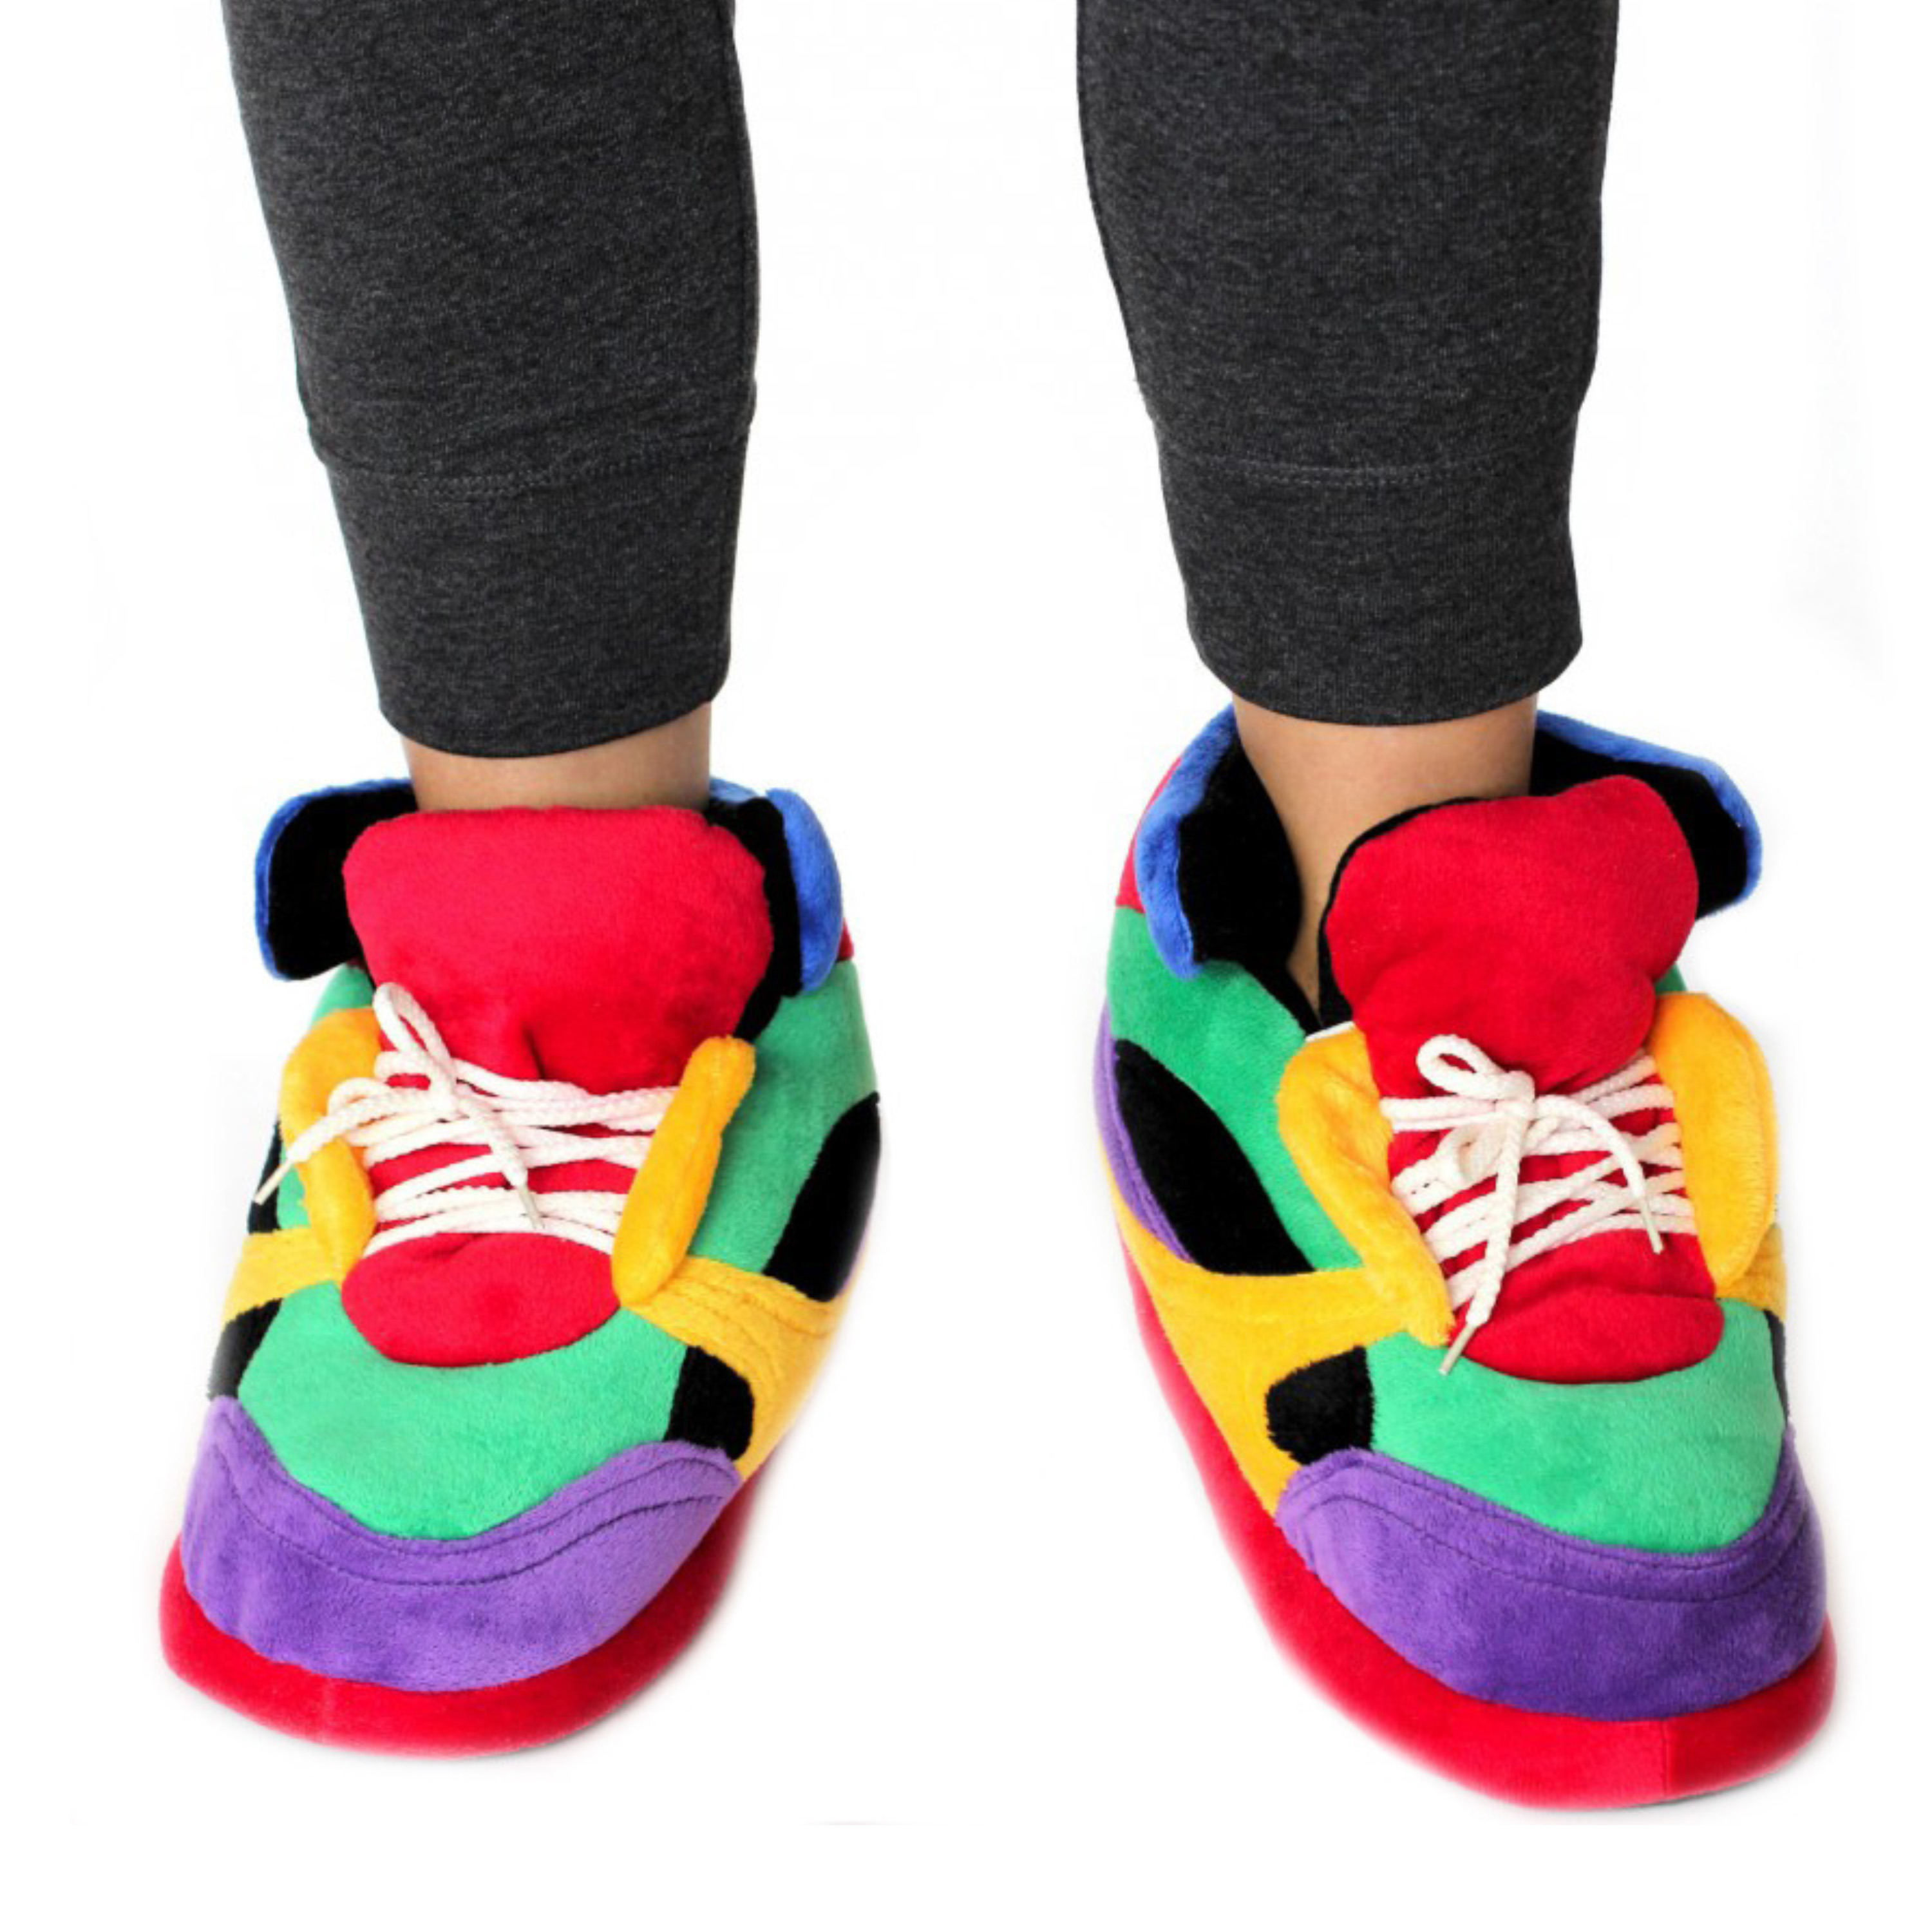 Pantoffels-sloffen clownschoenen-sneakers voor kinderen XS maat 29-33